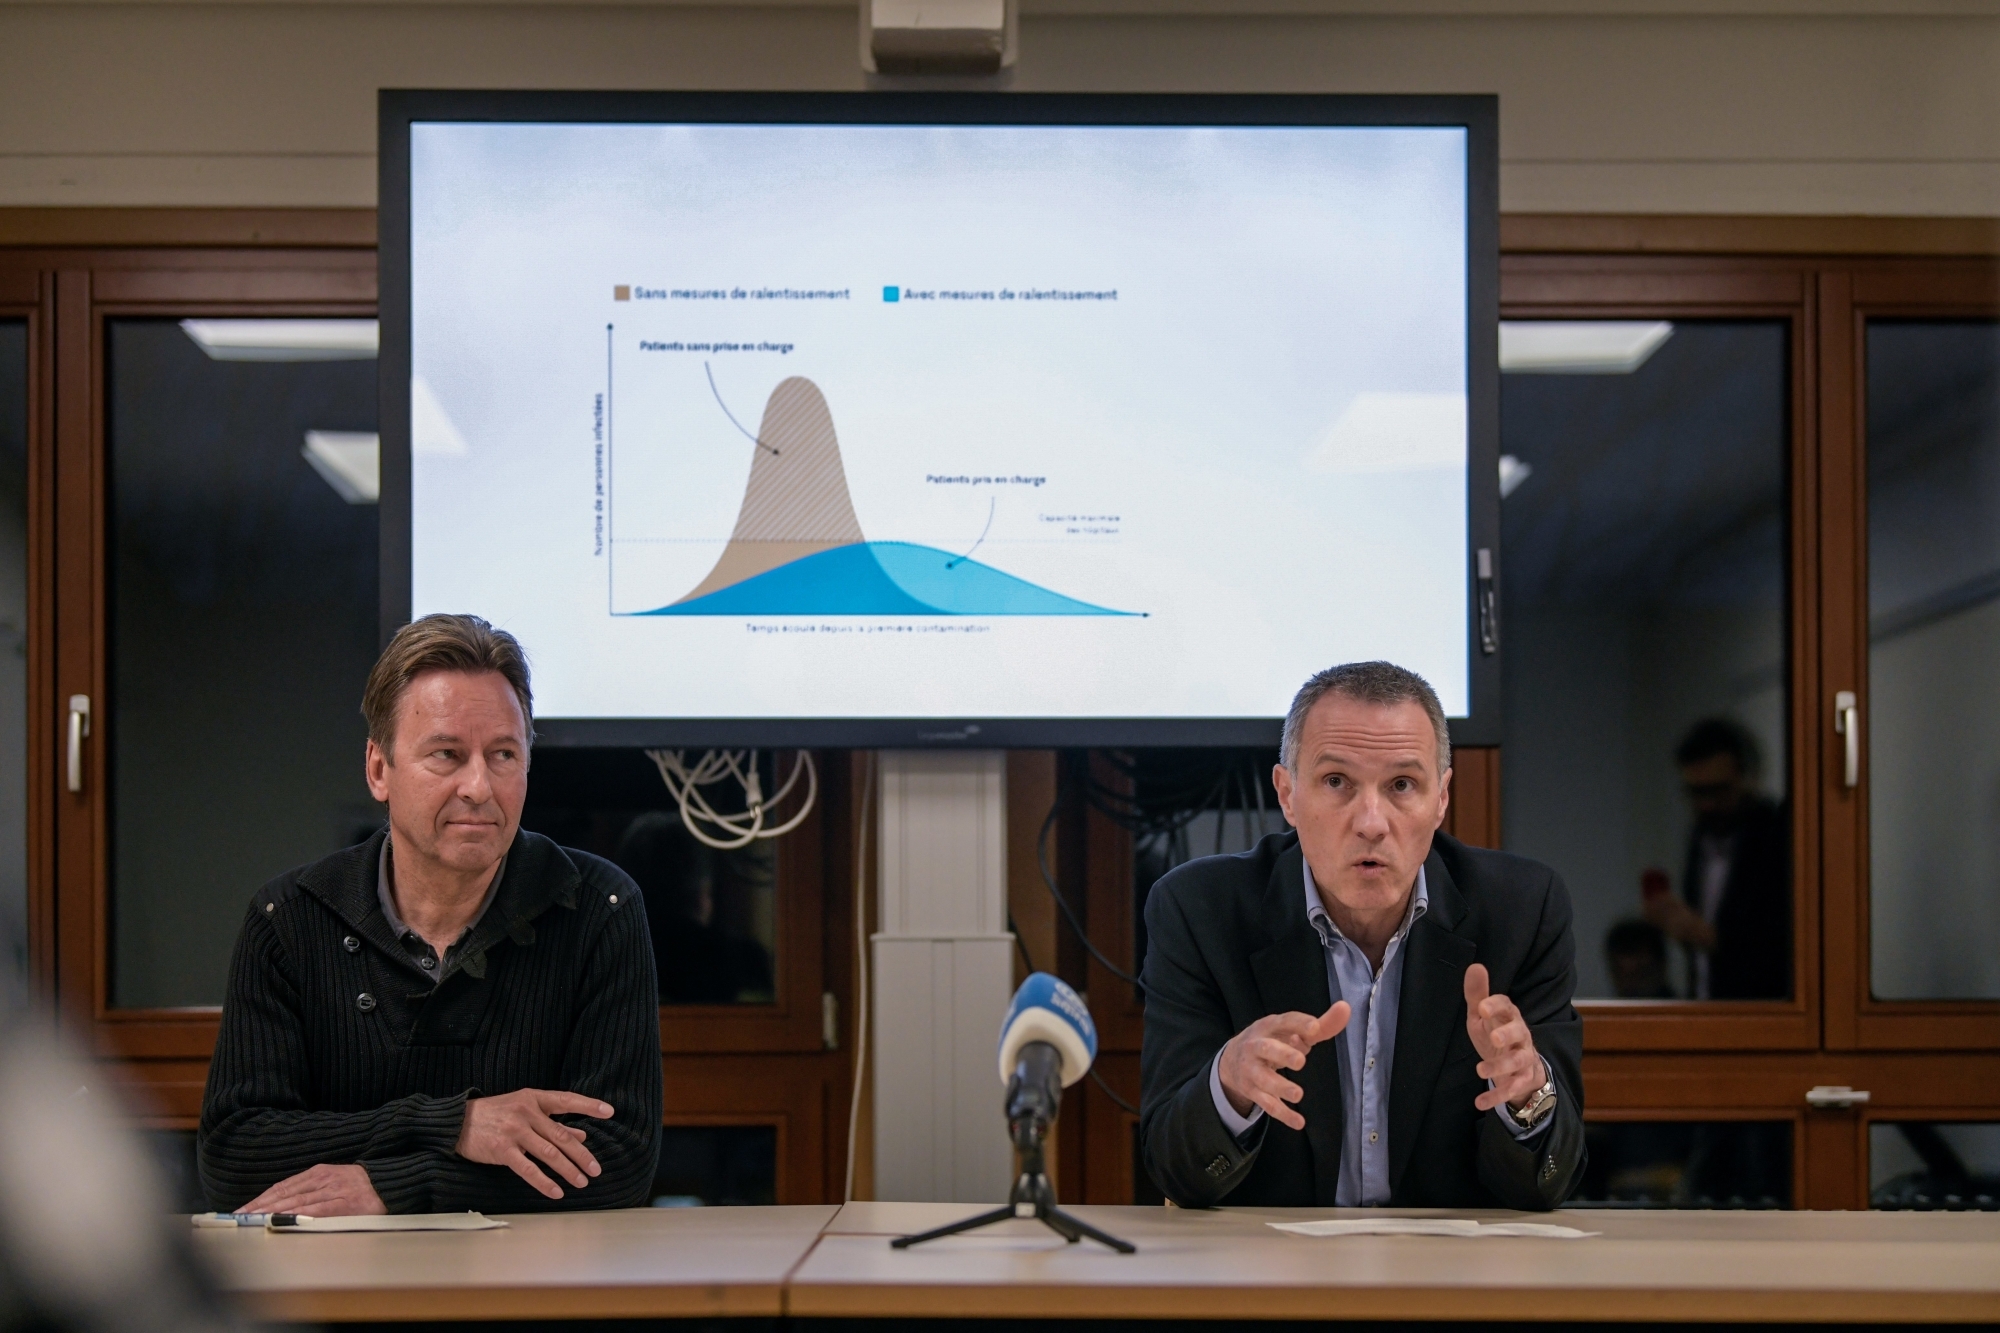 Les conseillers d'Etat Alain Ribaux et Laurent Kurth (de gauche à droite) ont détaillé les nouvelles mesures décidées pour lutter contre l'épidémie de coronavirus.